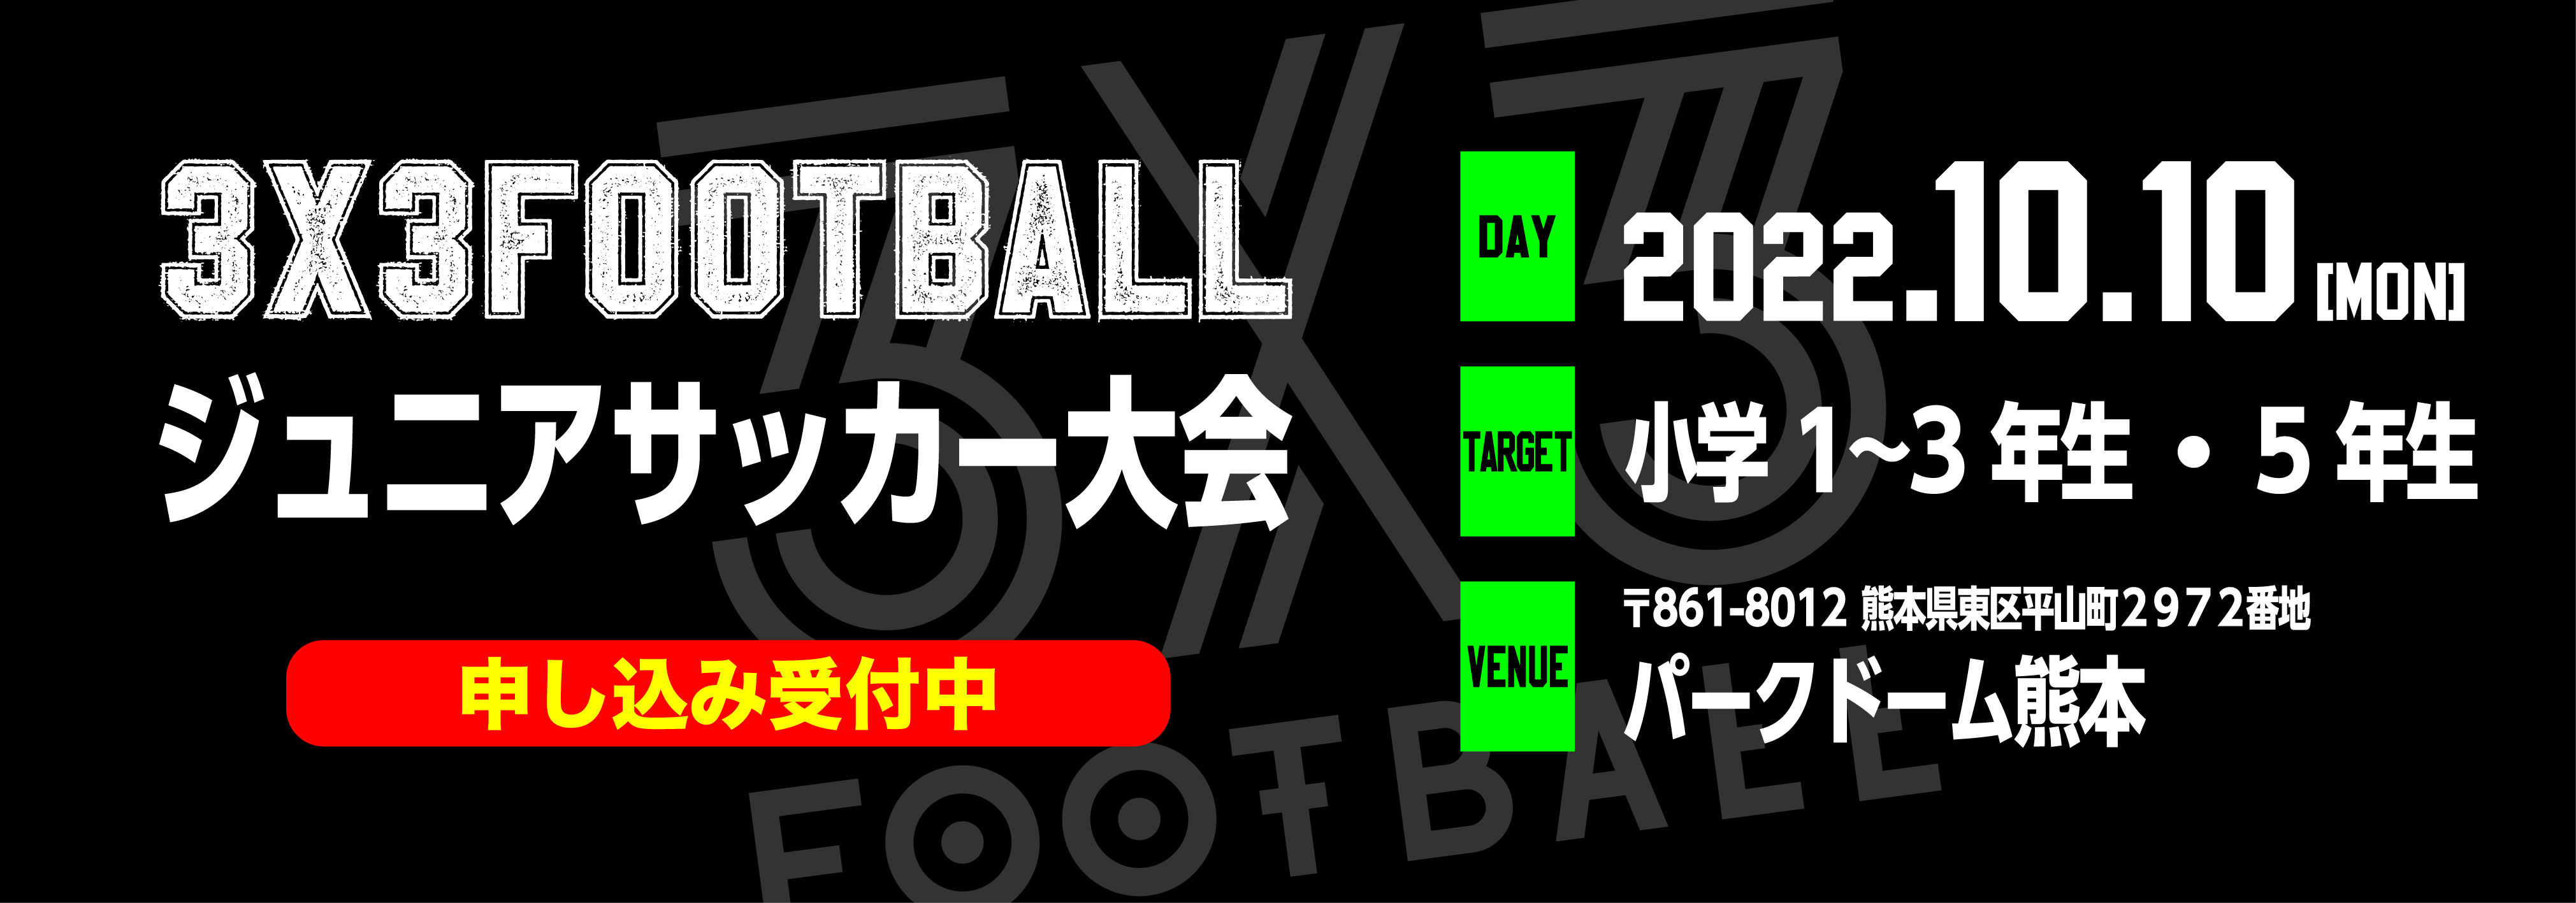 経験と日常 ソレッソ熊本 熊本のサッカークラブ